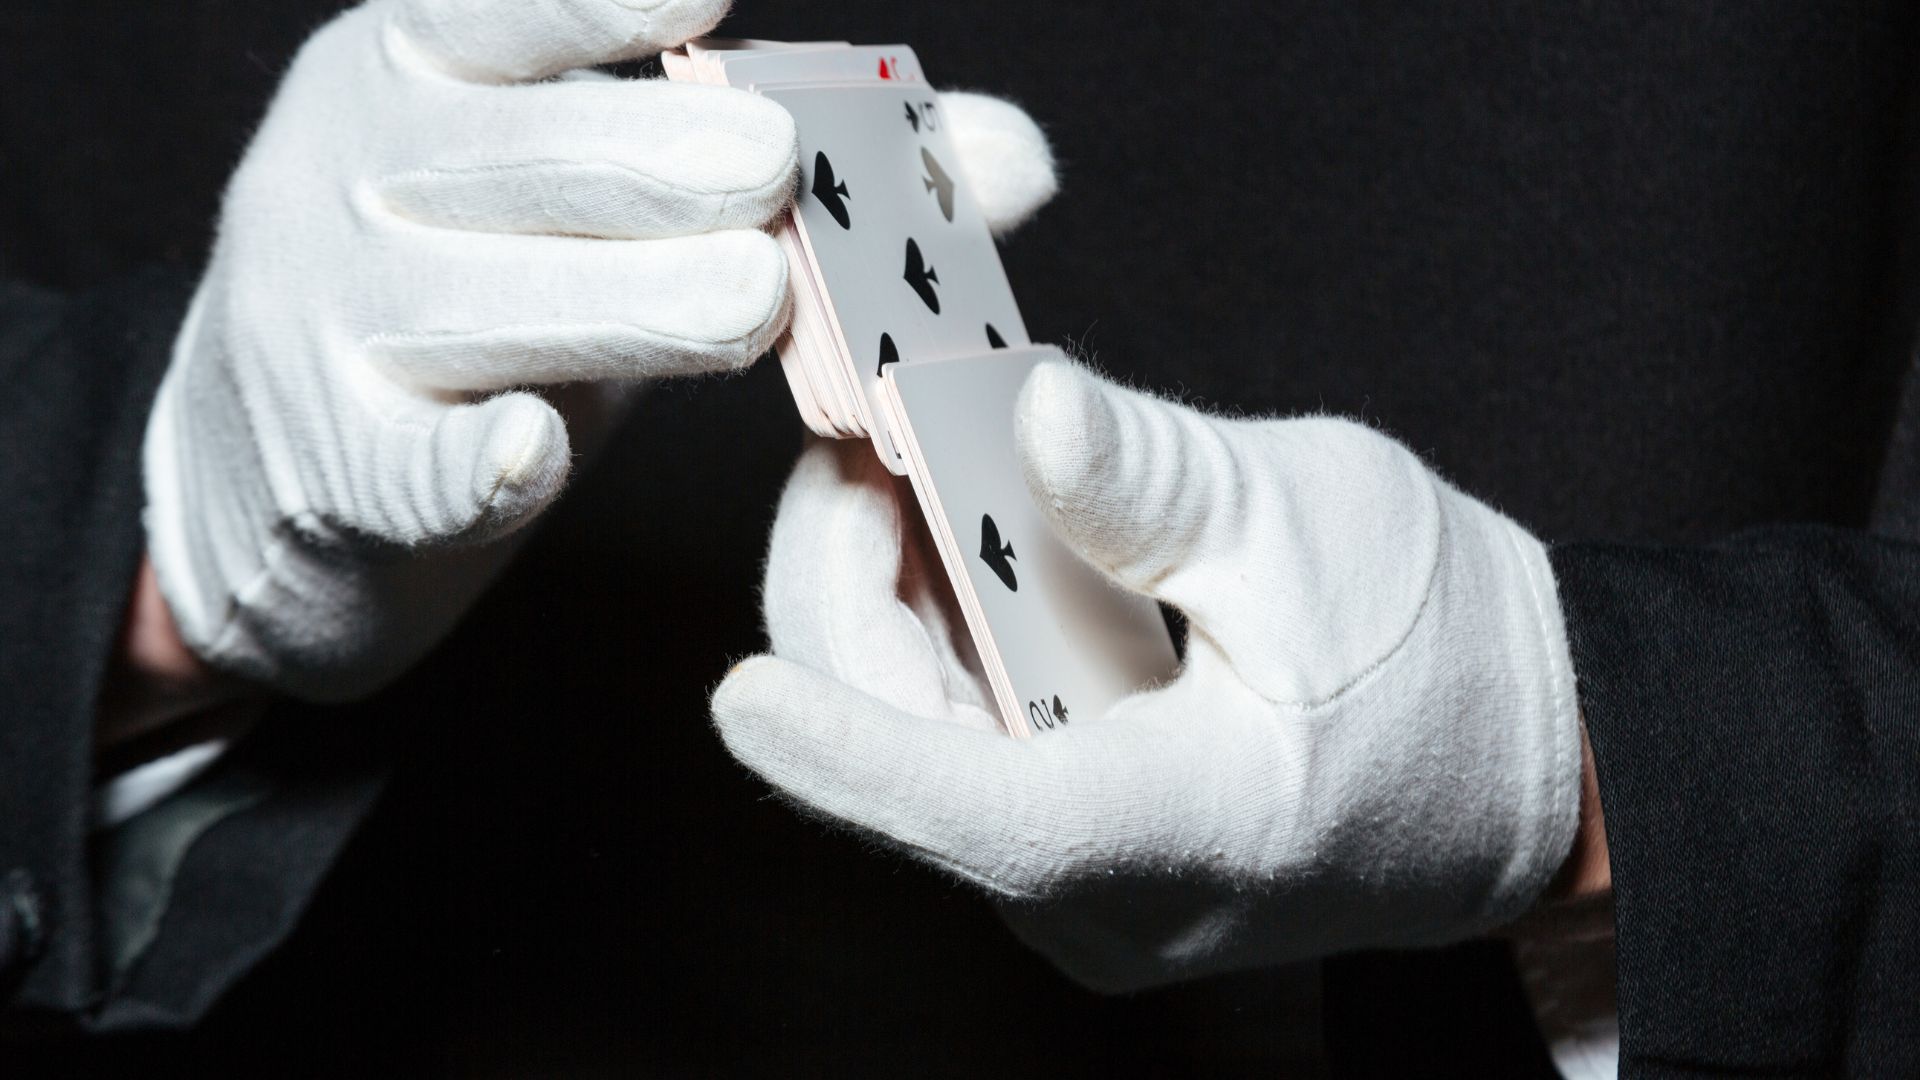 magician doing card tricks